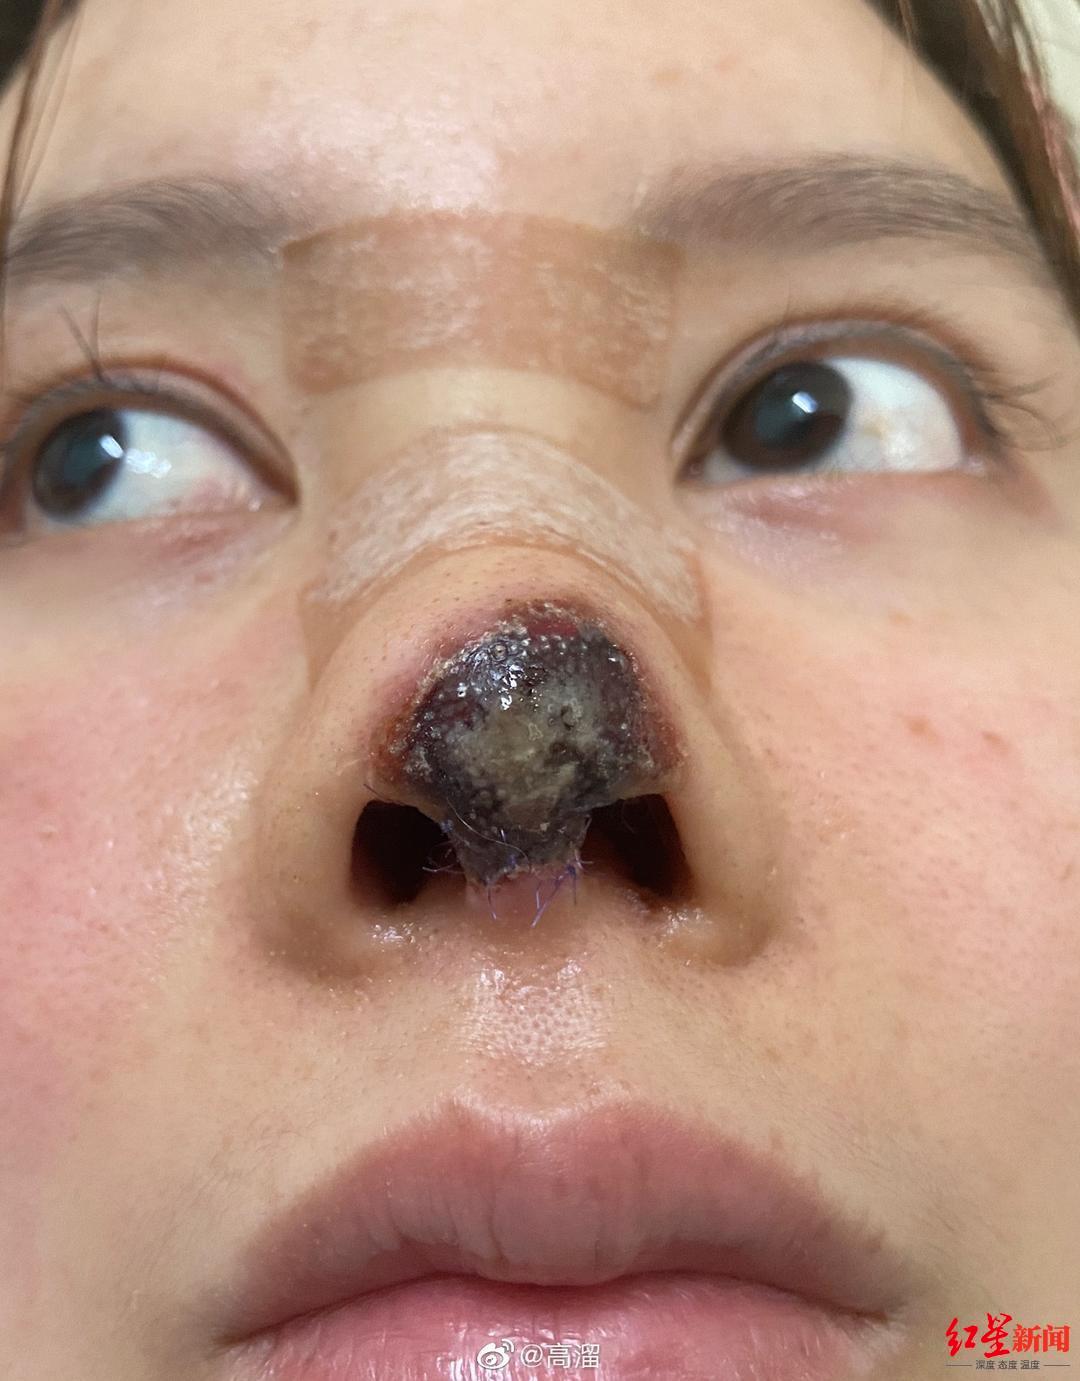 鼻子座疮造成的痘坑痘疤 激光和手术切除经历 - 知乎